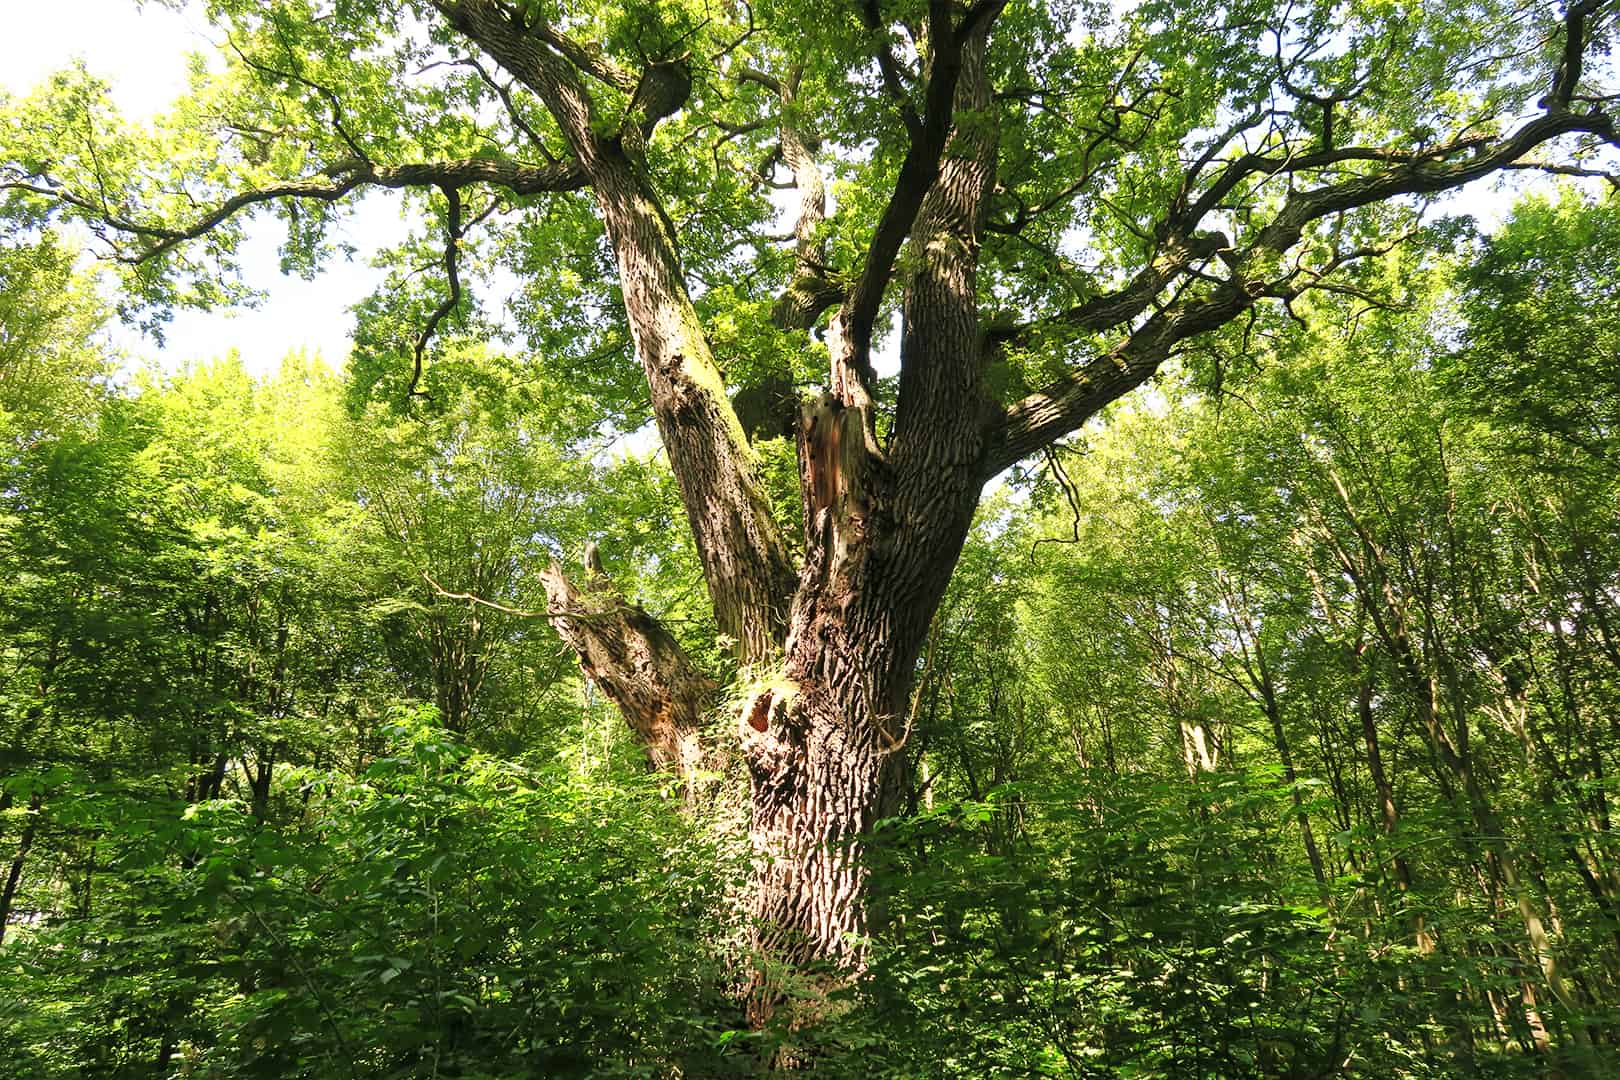 Veteranen Baum im Urwald Österreichs©Karin Enzenhofer / WWF